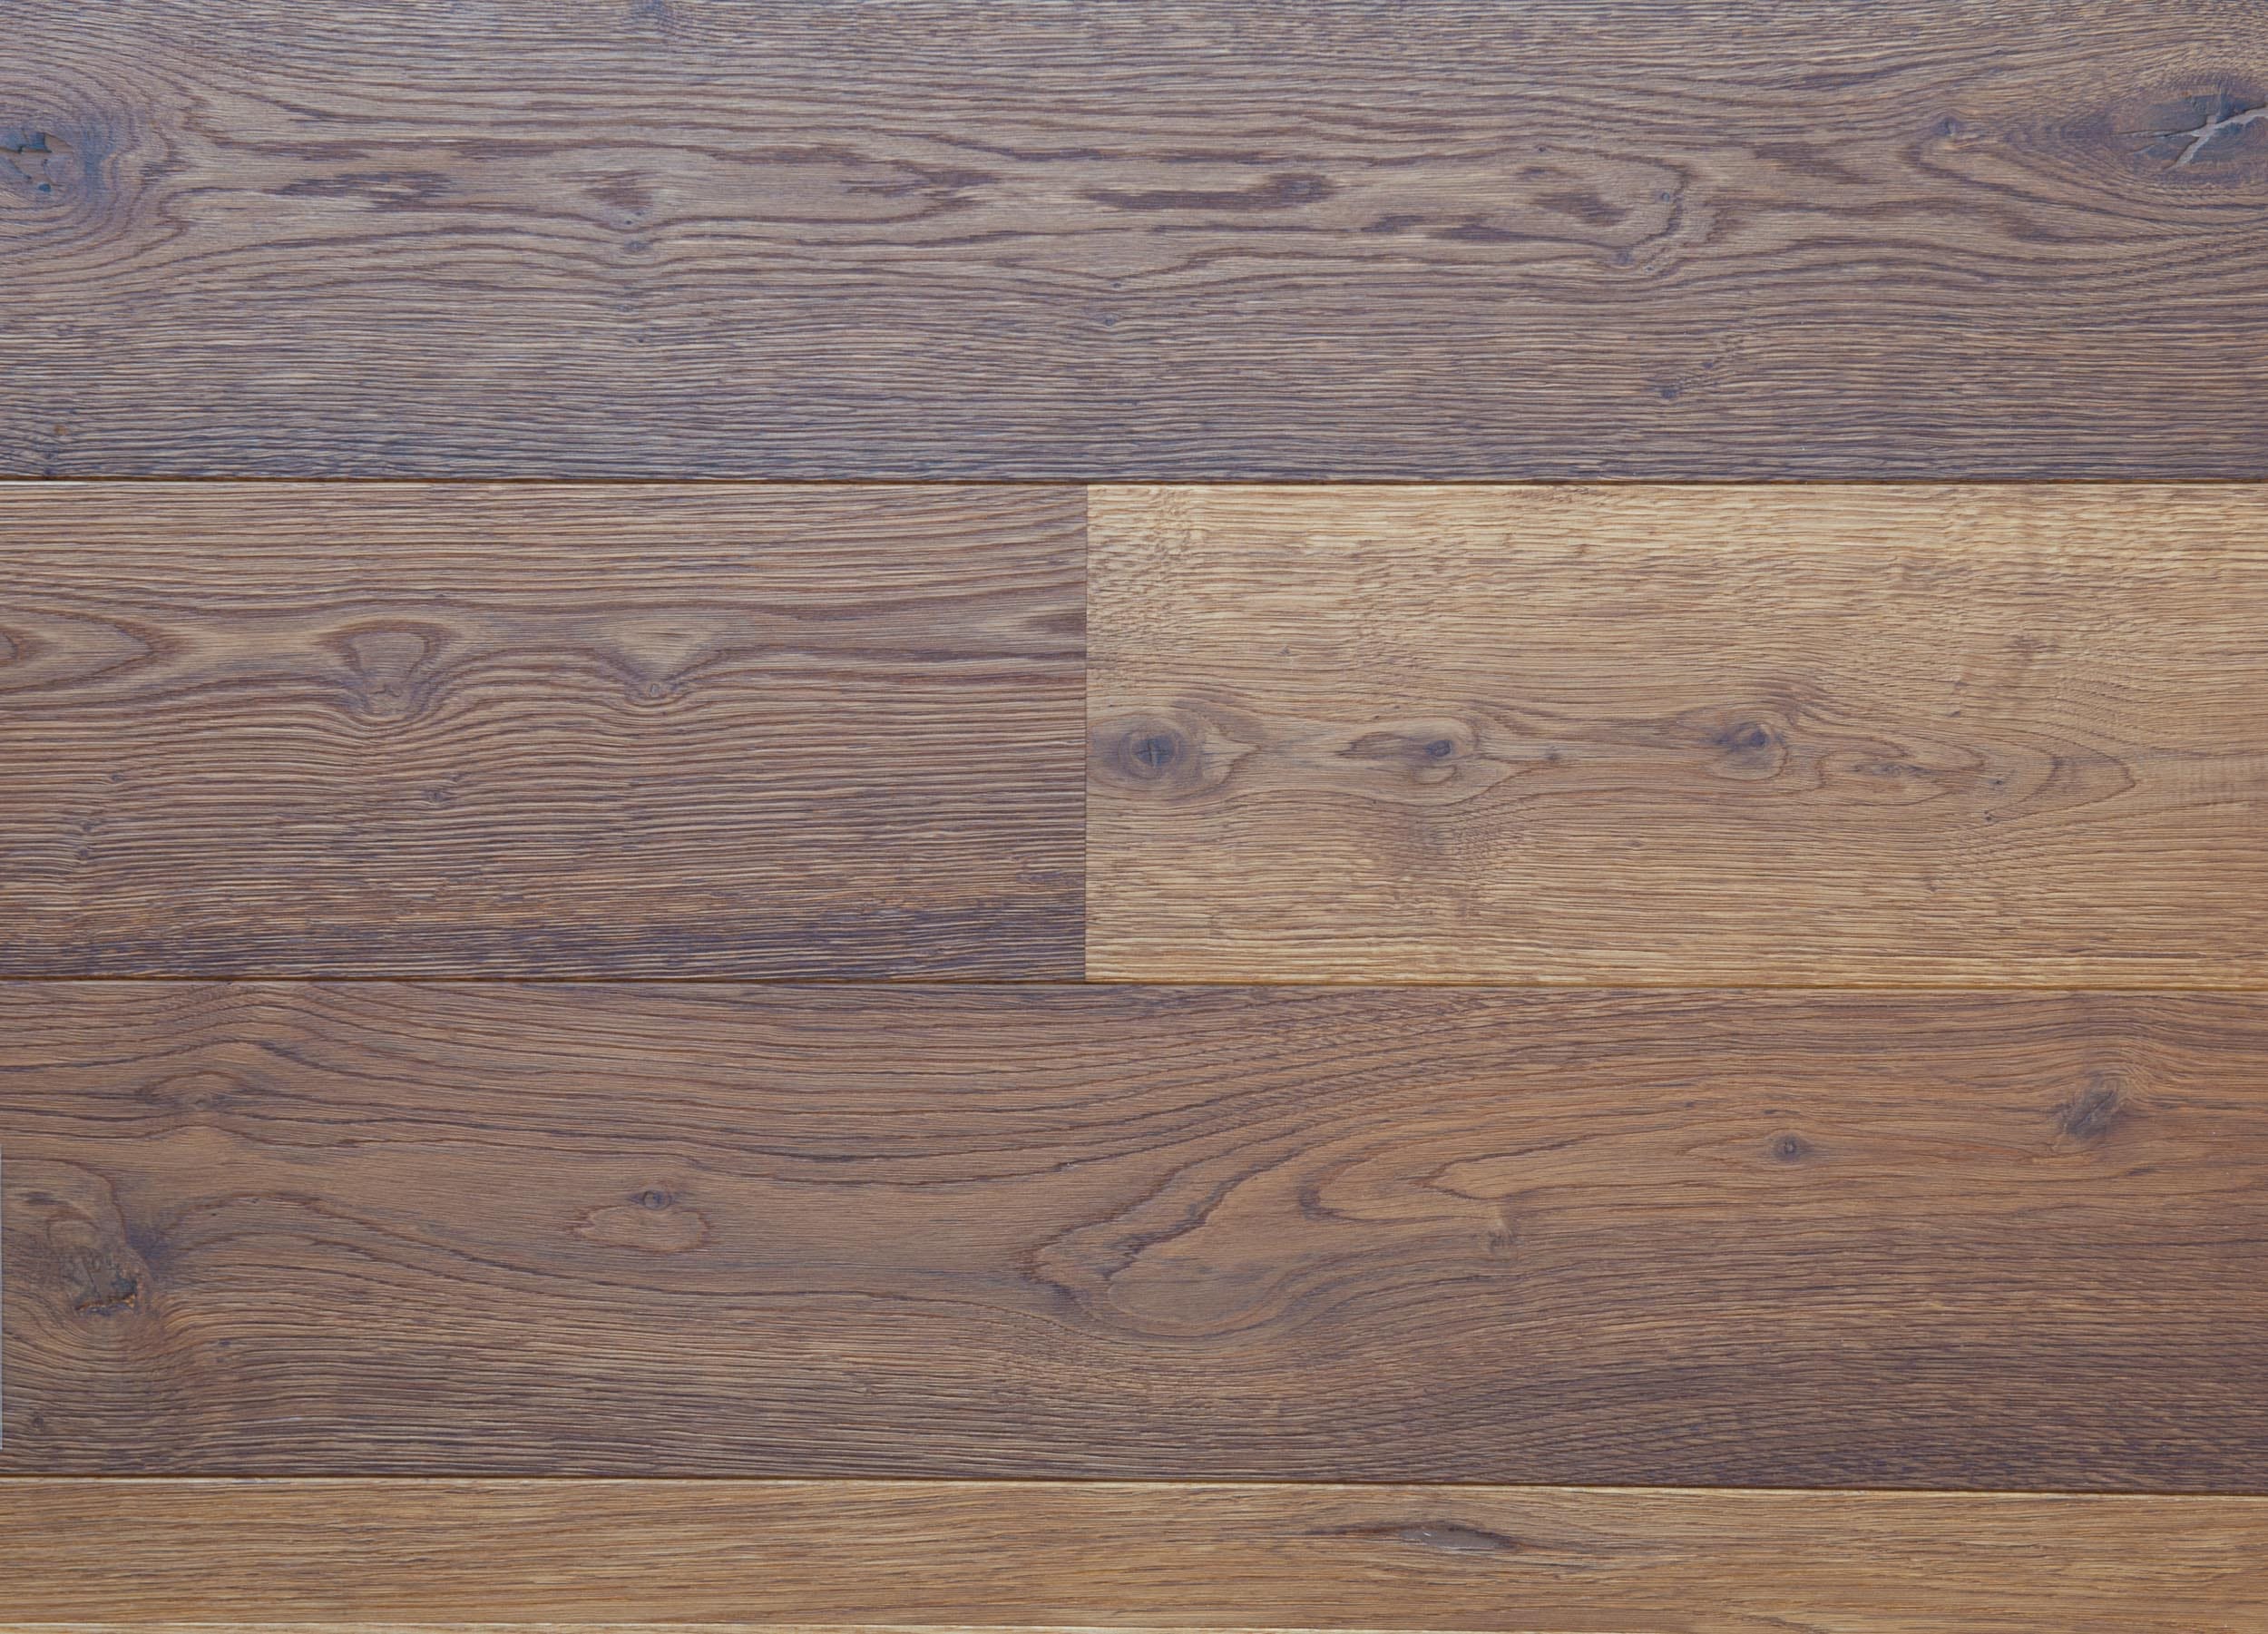 Odel Smoked Oak Wood Flooring